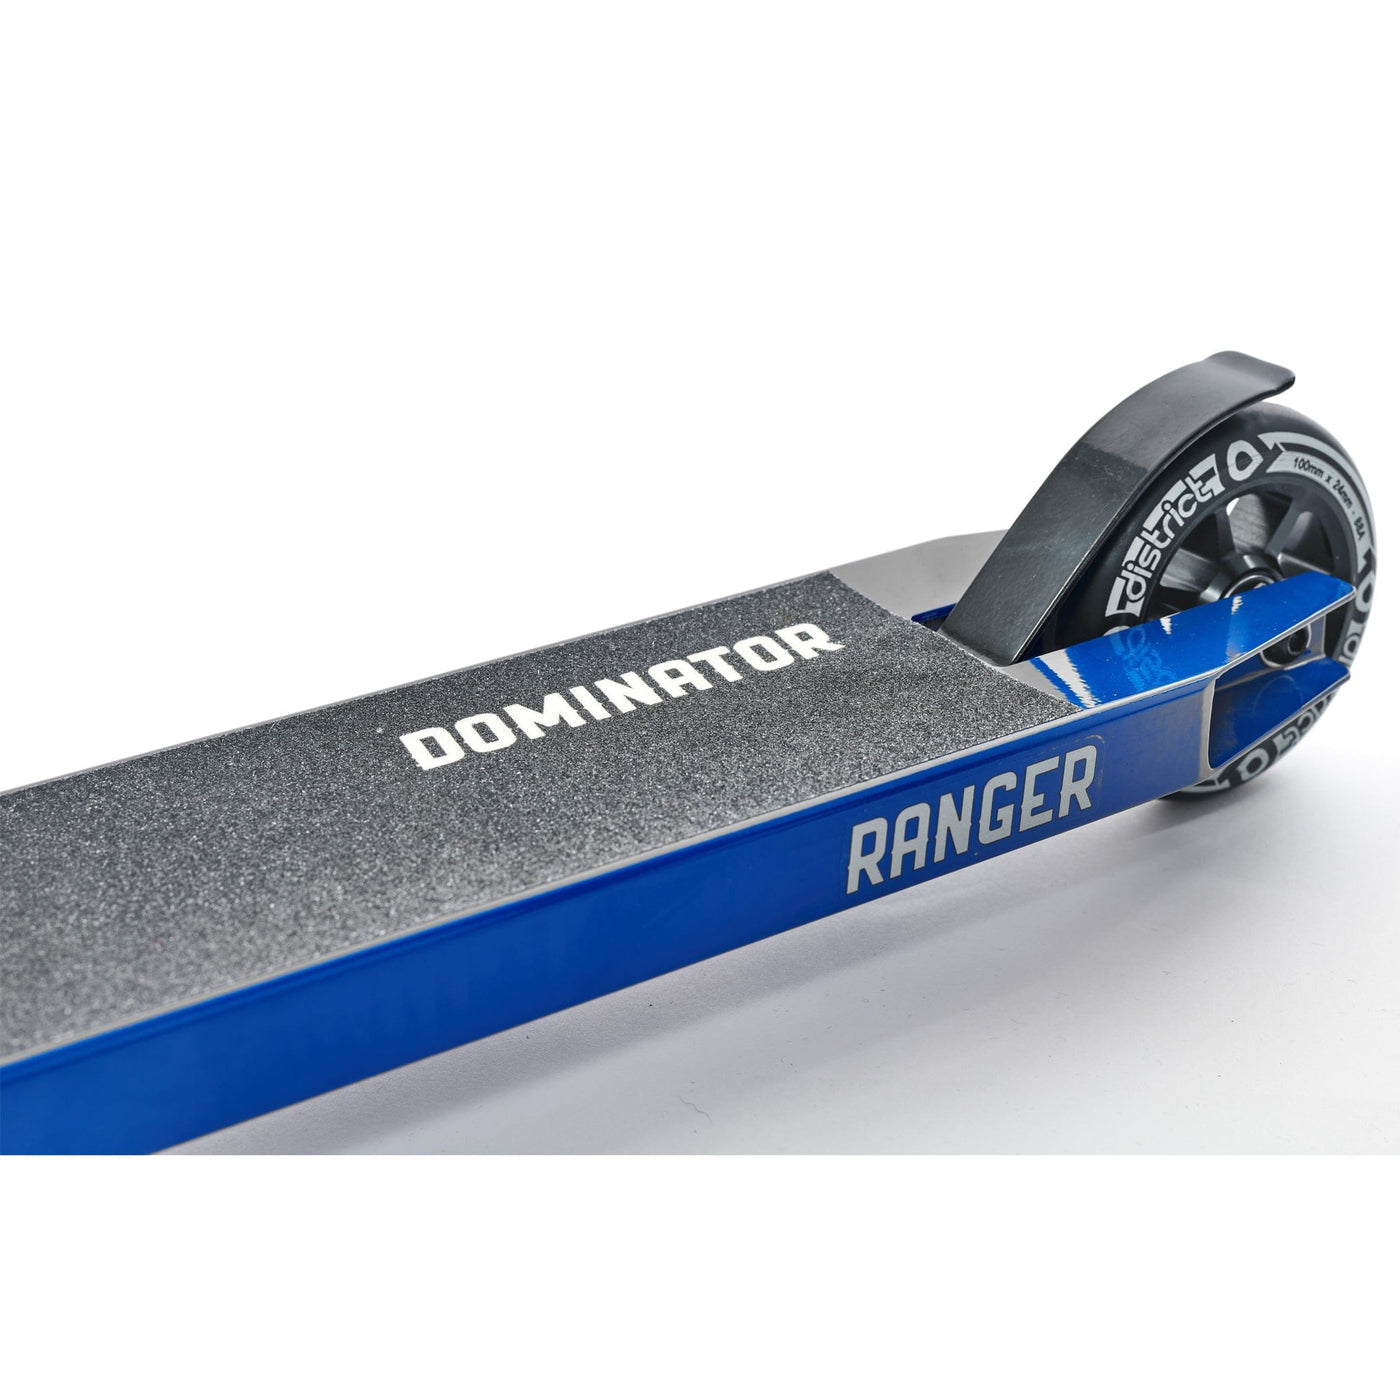 Dominator Ranger Complete Scooter - Blue / Grey Dominator